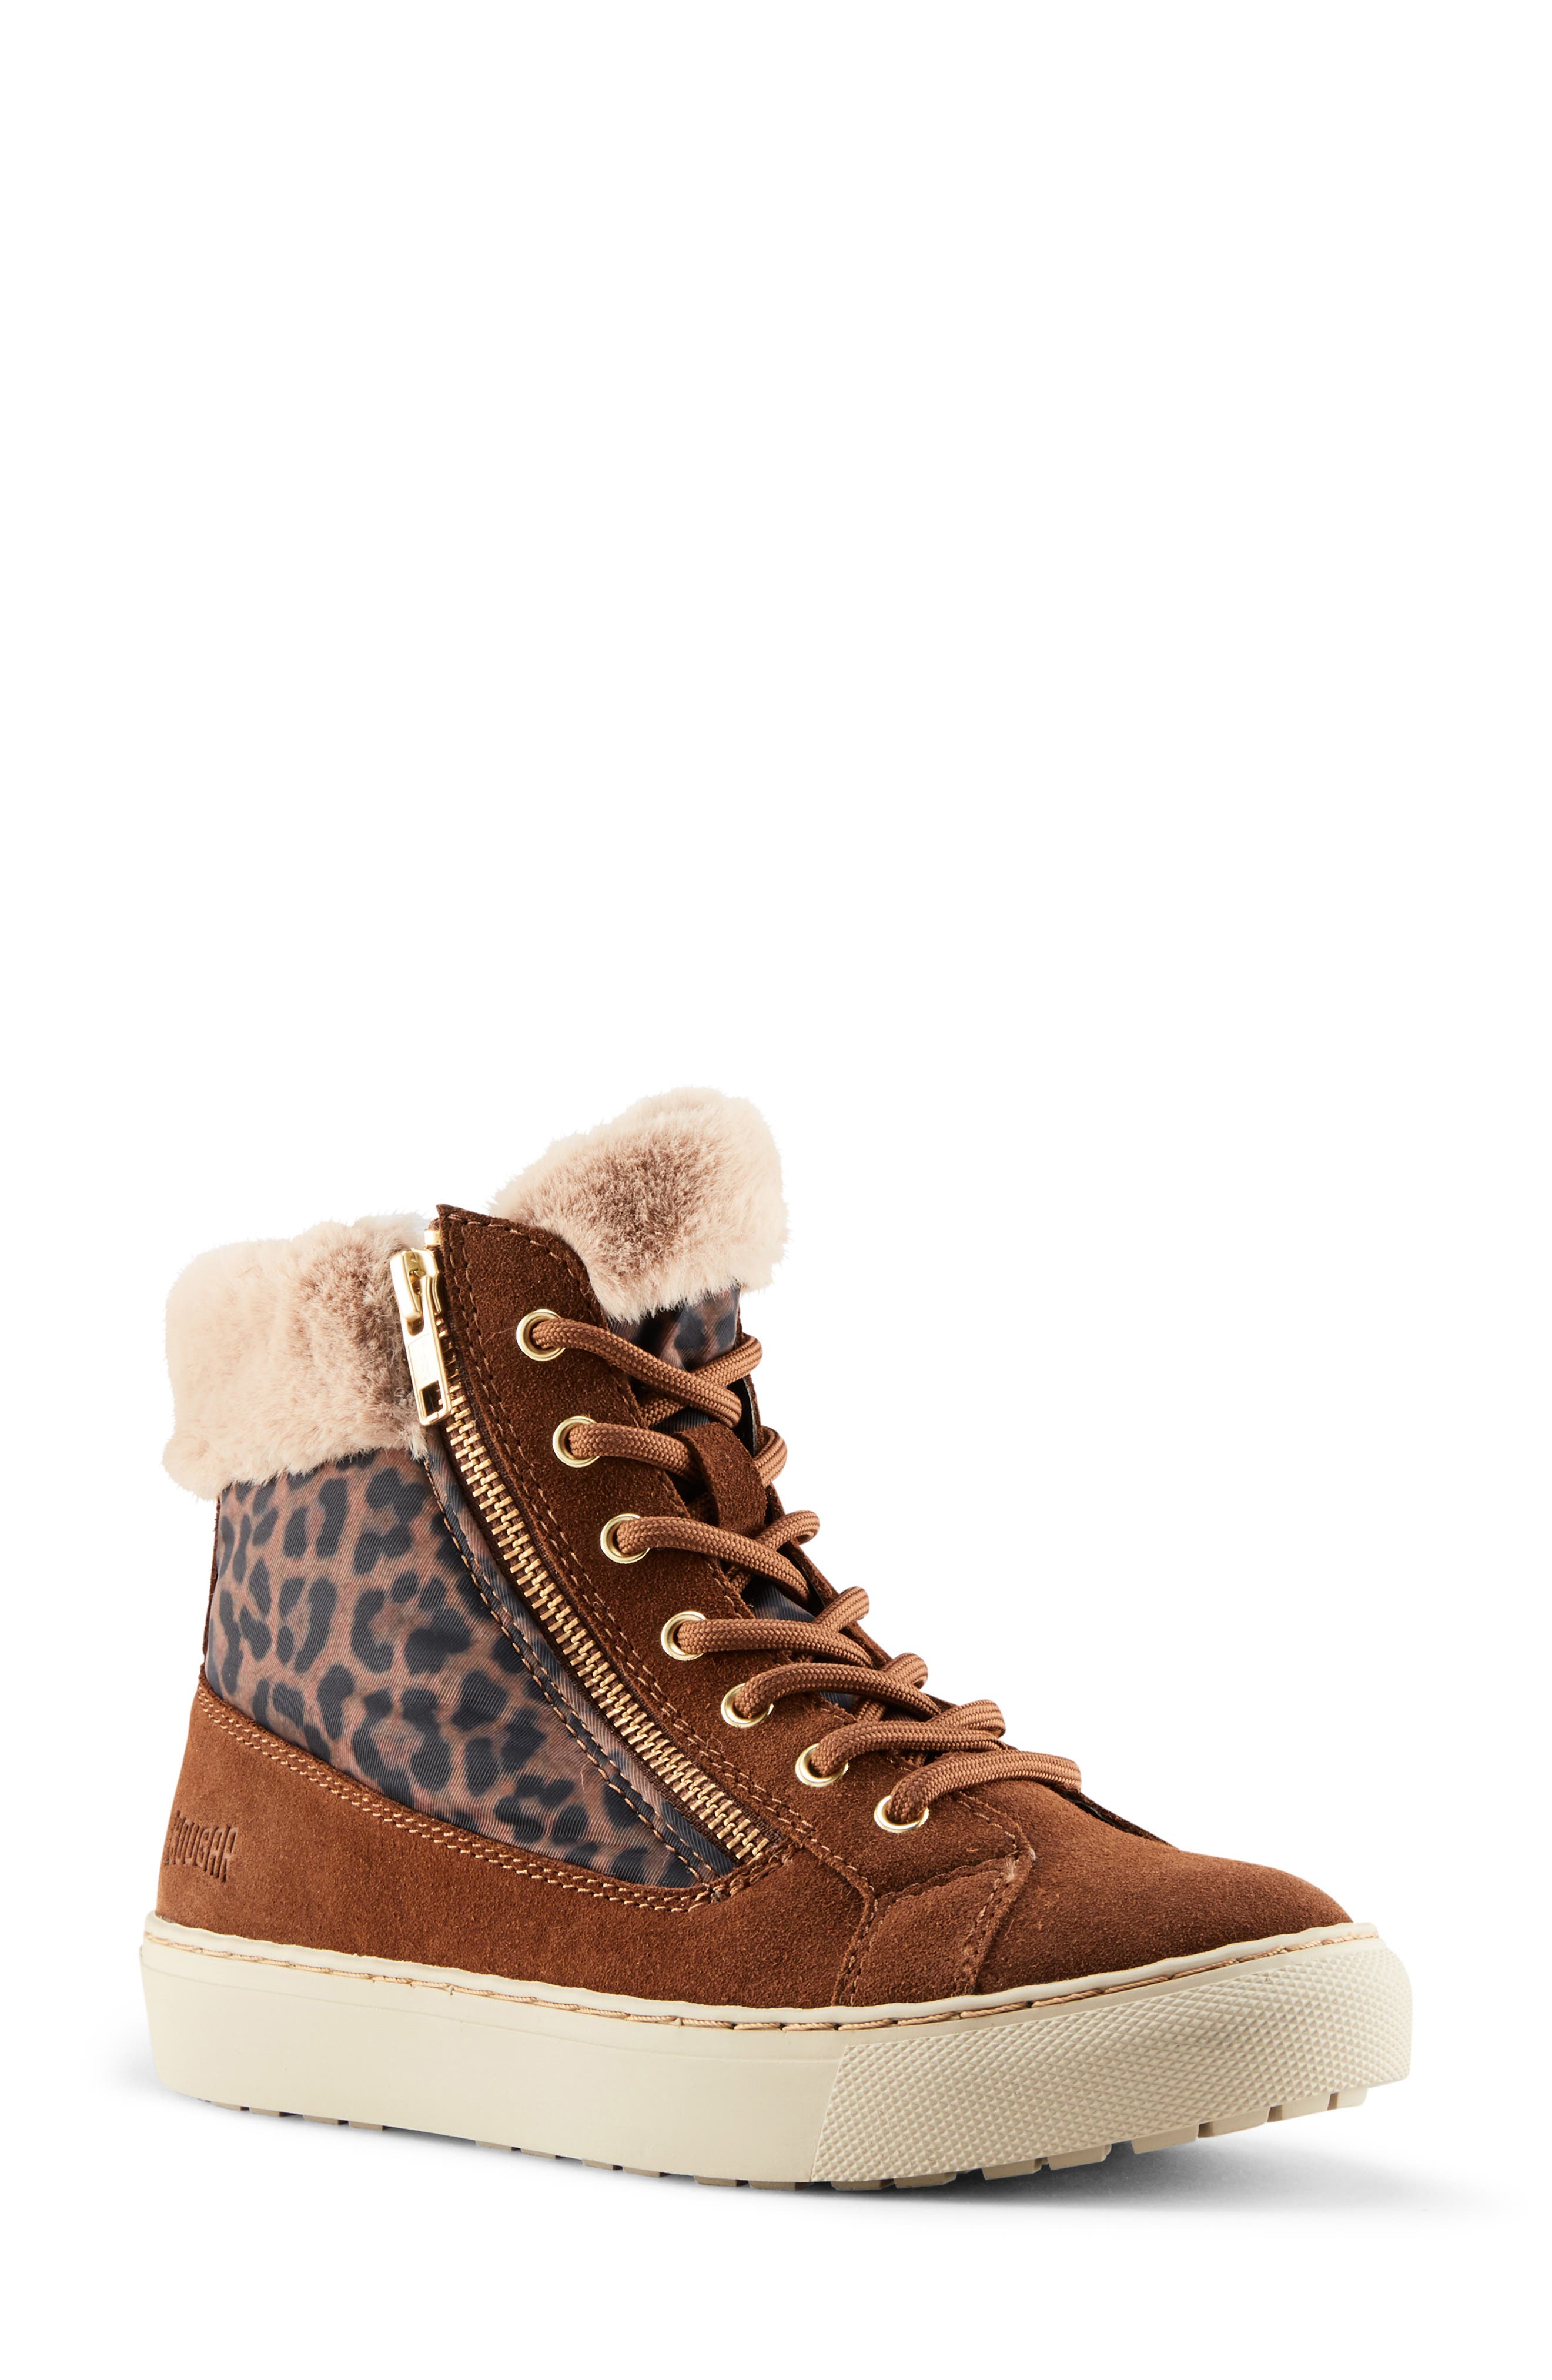 cougar shoes dublin boots